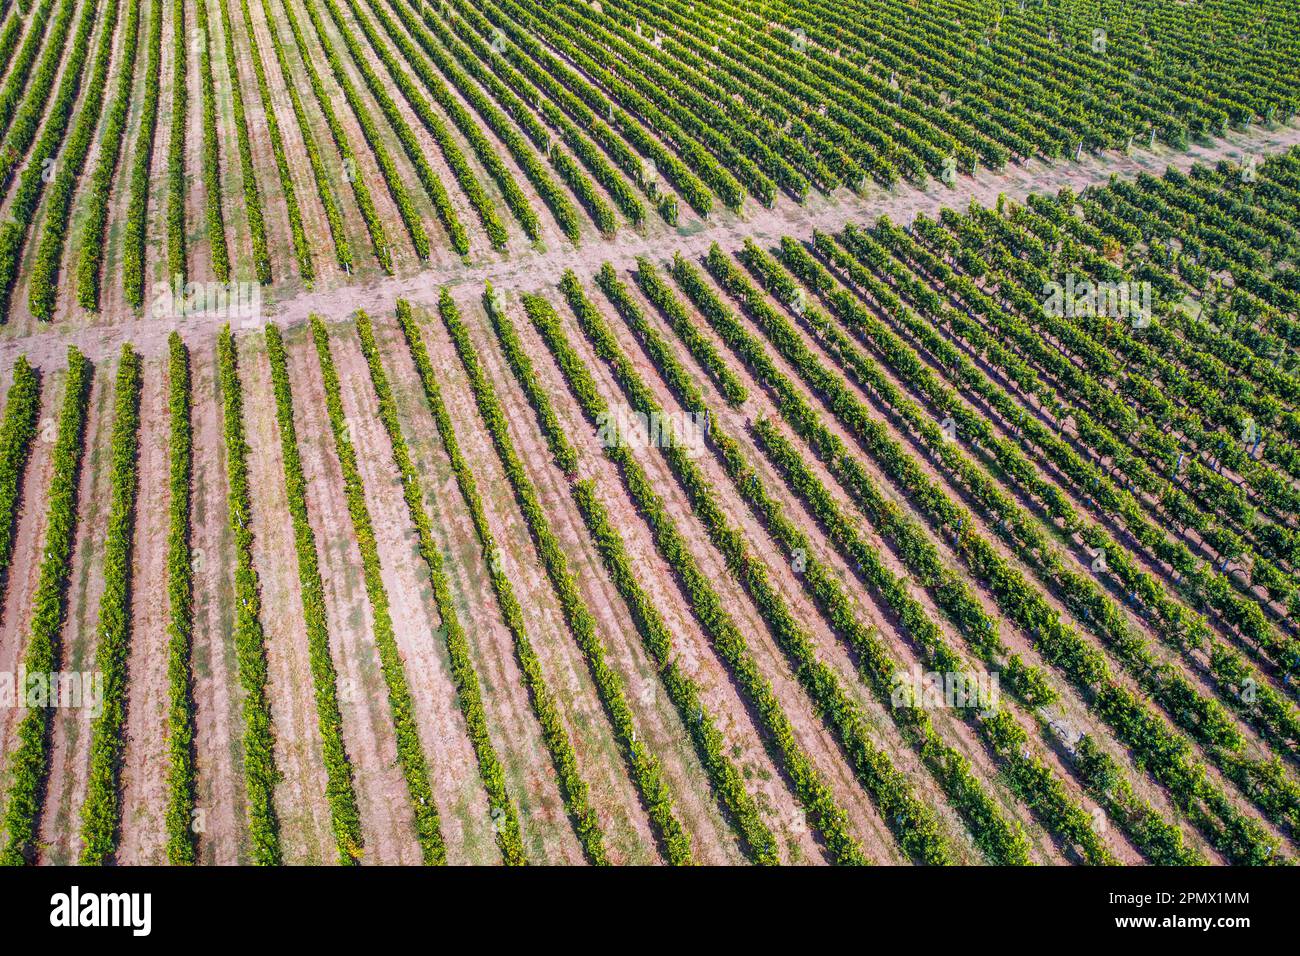 Verlieren Sie sich in der Schönheit eines blühenden Weinbergs, mit Reihen von üppigen und fruchtbaren Weinreben, die eine atemberaubende visuelle Darstellung von oben erzeugen Stockfoto